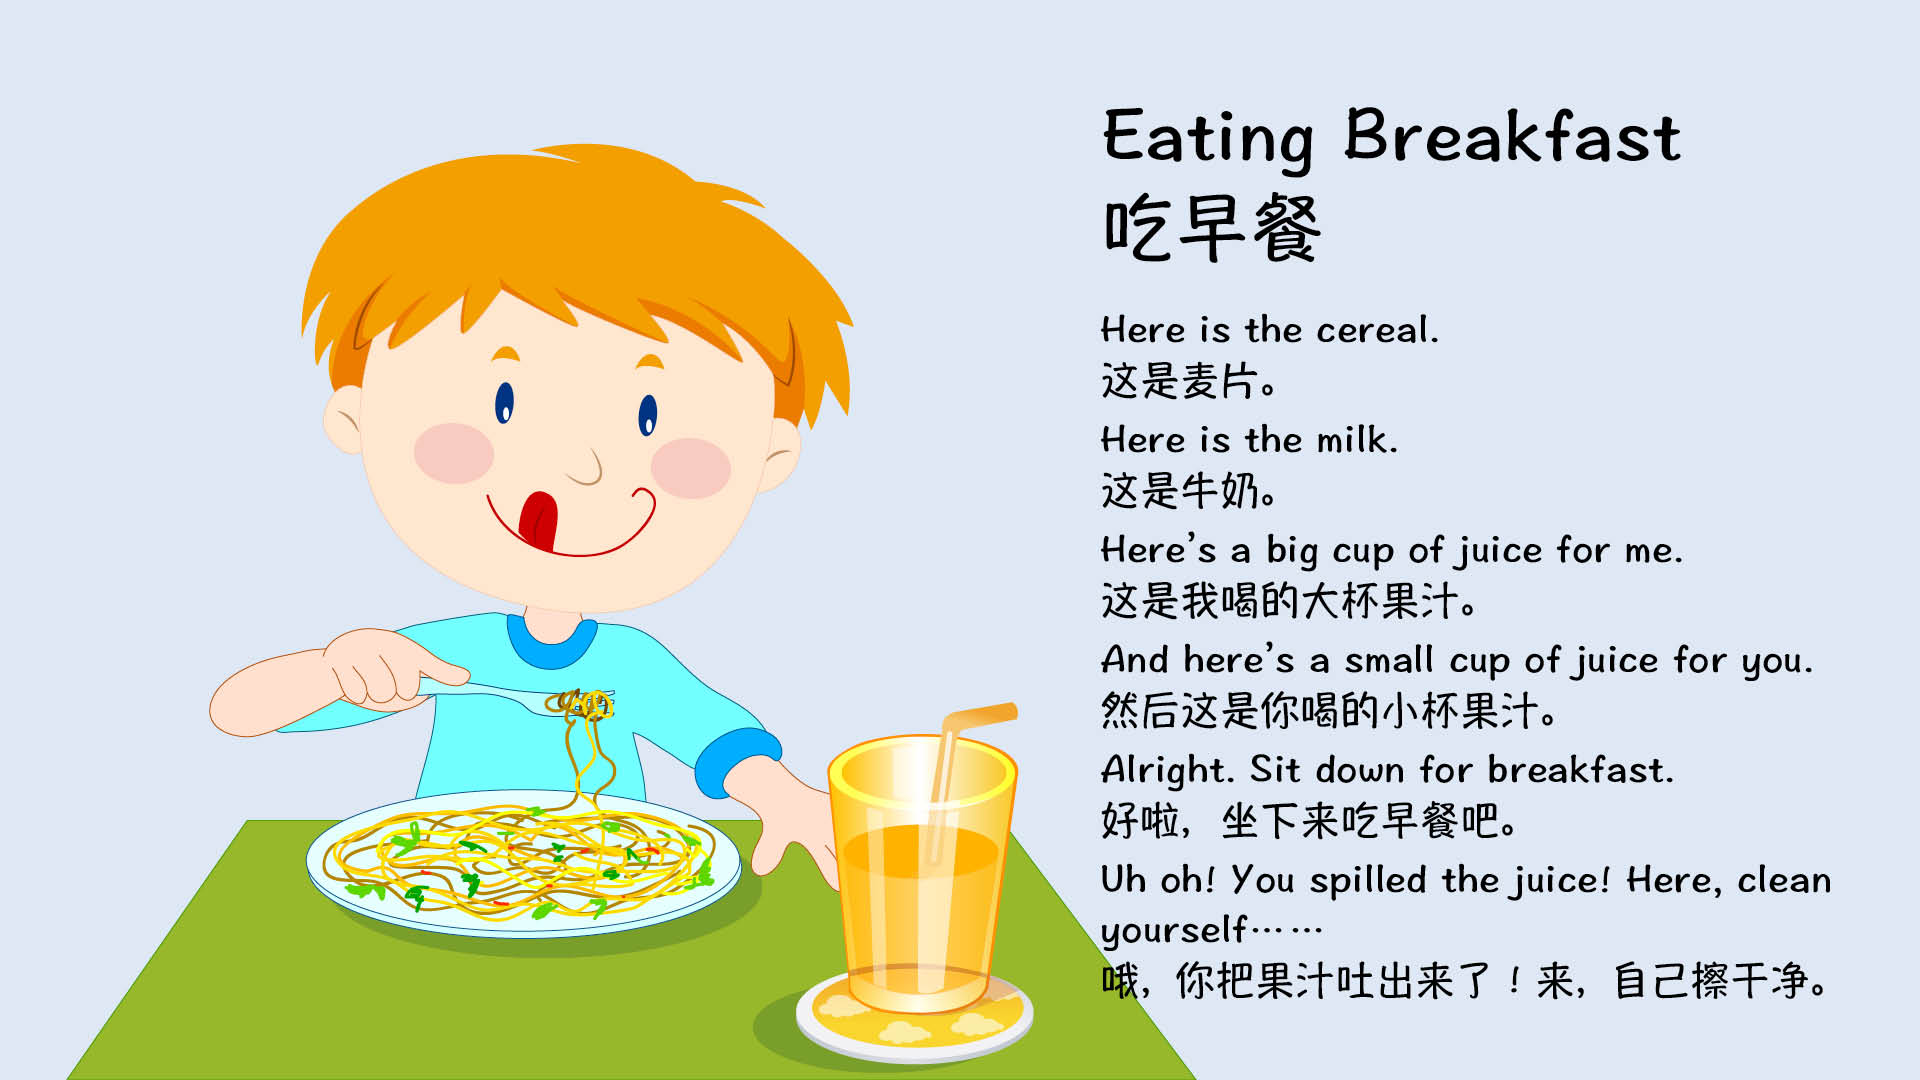 早餐提供宝宝营养和能量,英语启蒙提供宝宝喜